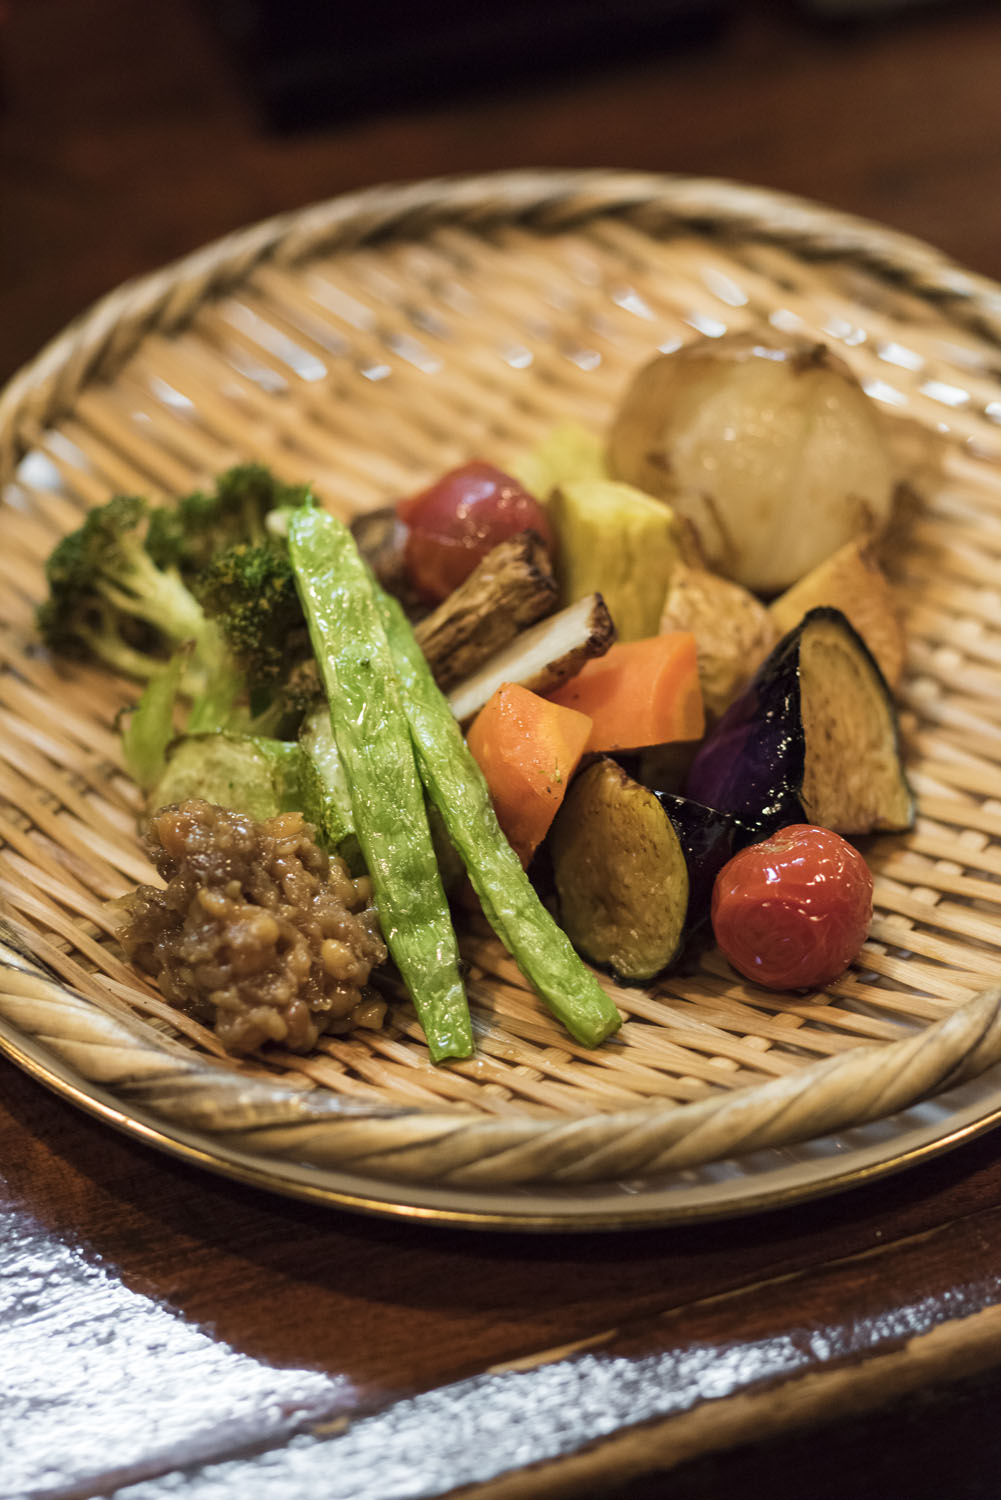 京野菜を使った野菜の素揚げおまかせ盛り968円はもろみ味噌がよく合う。